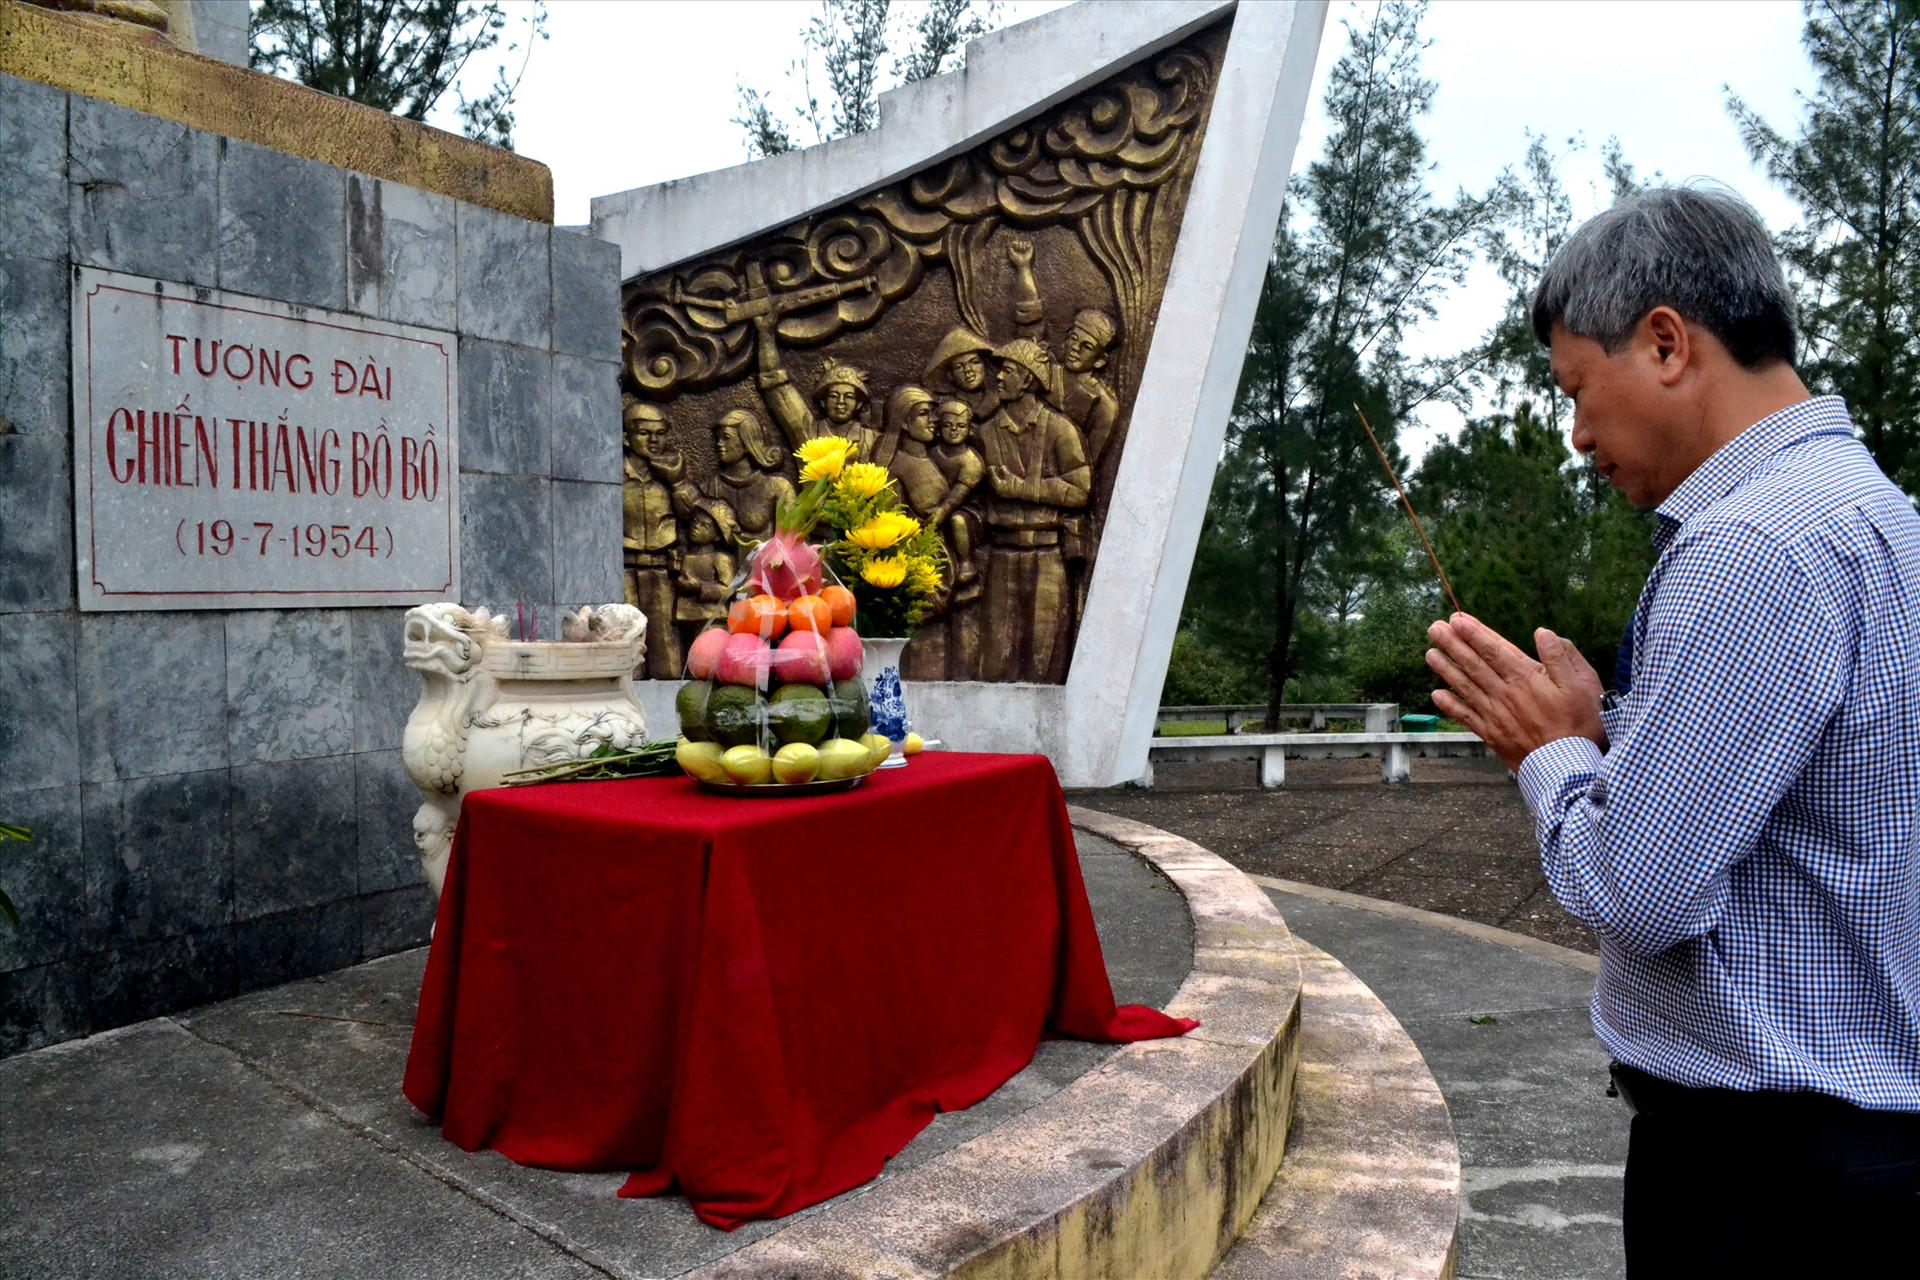 Phó Chủ tịch UBND tỉnh Hồ Quang Bửu viếng hương tại Tượng đài chiến thắng Bồ Bồ. Ảnh: Q.VIỆT